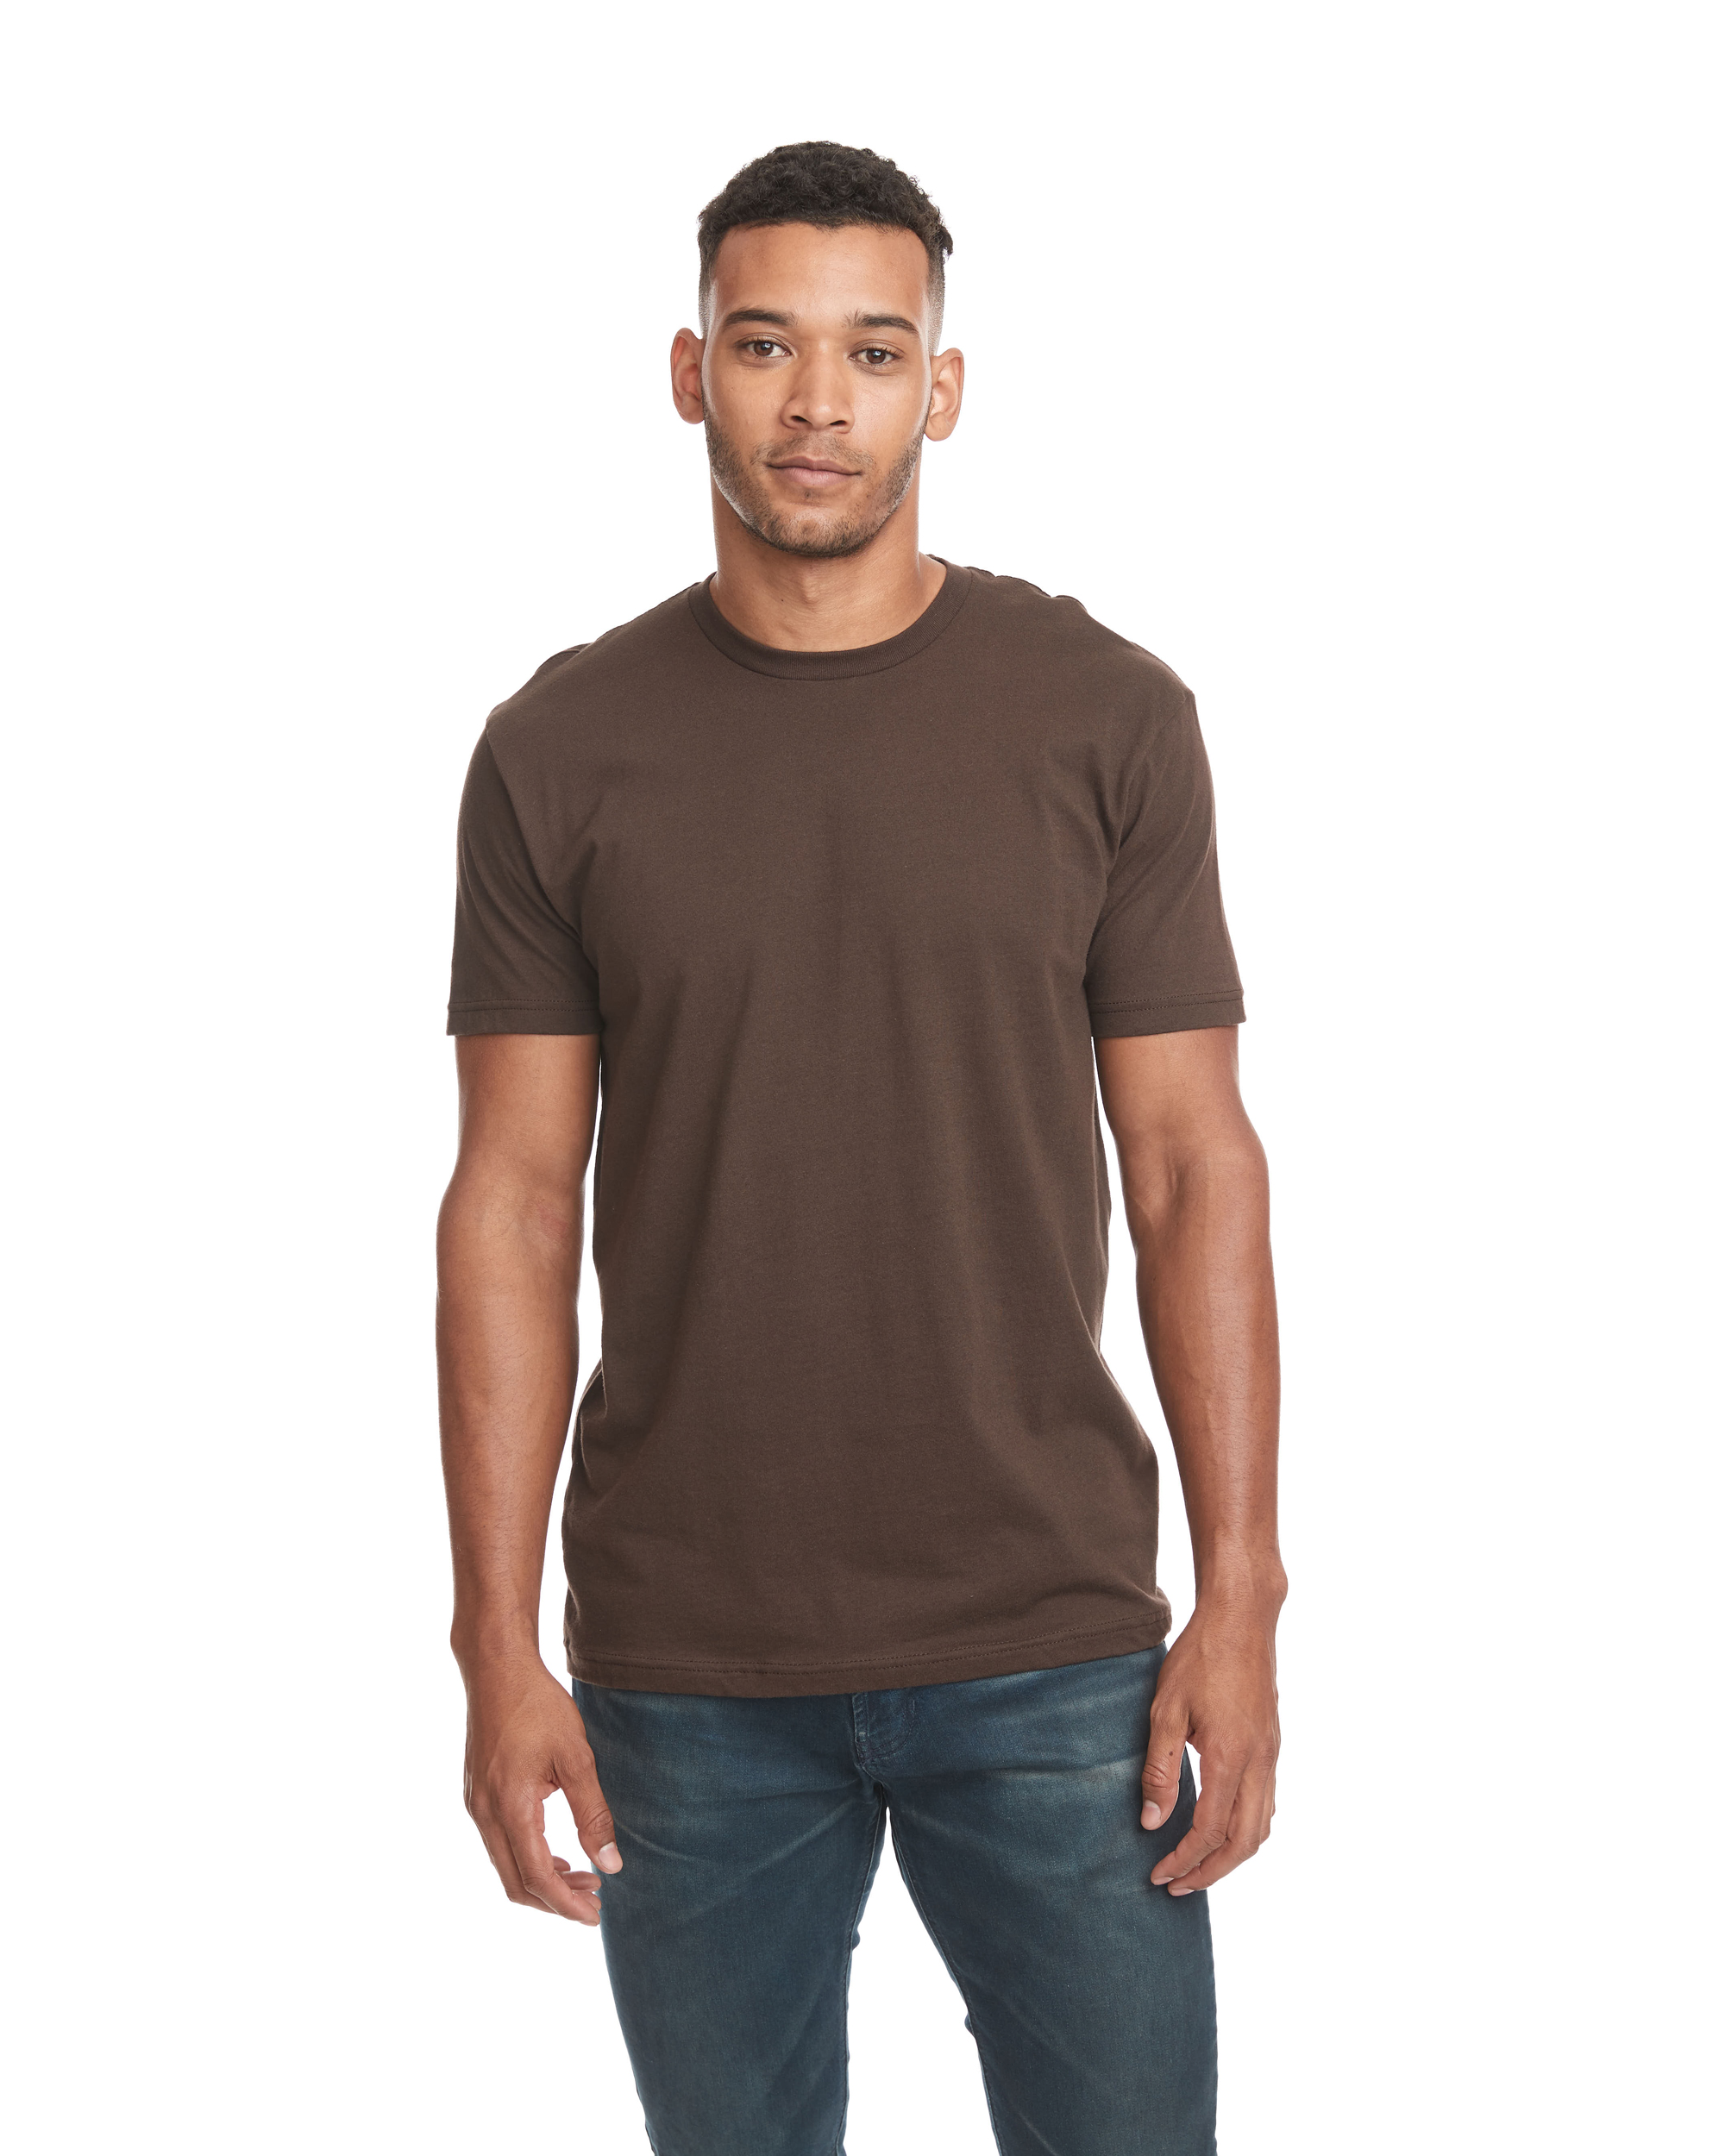 Next Level Apparel® 3600 Unisex Cotton T-Shirt